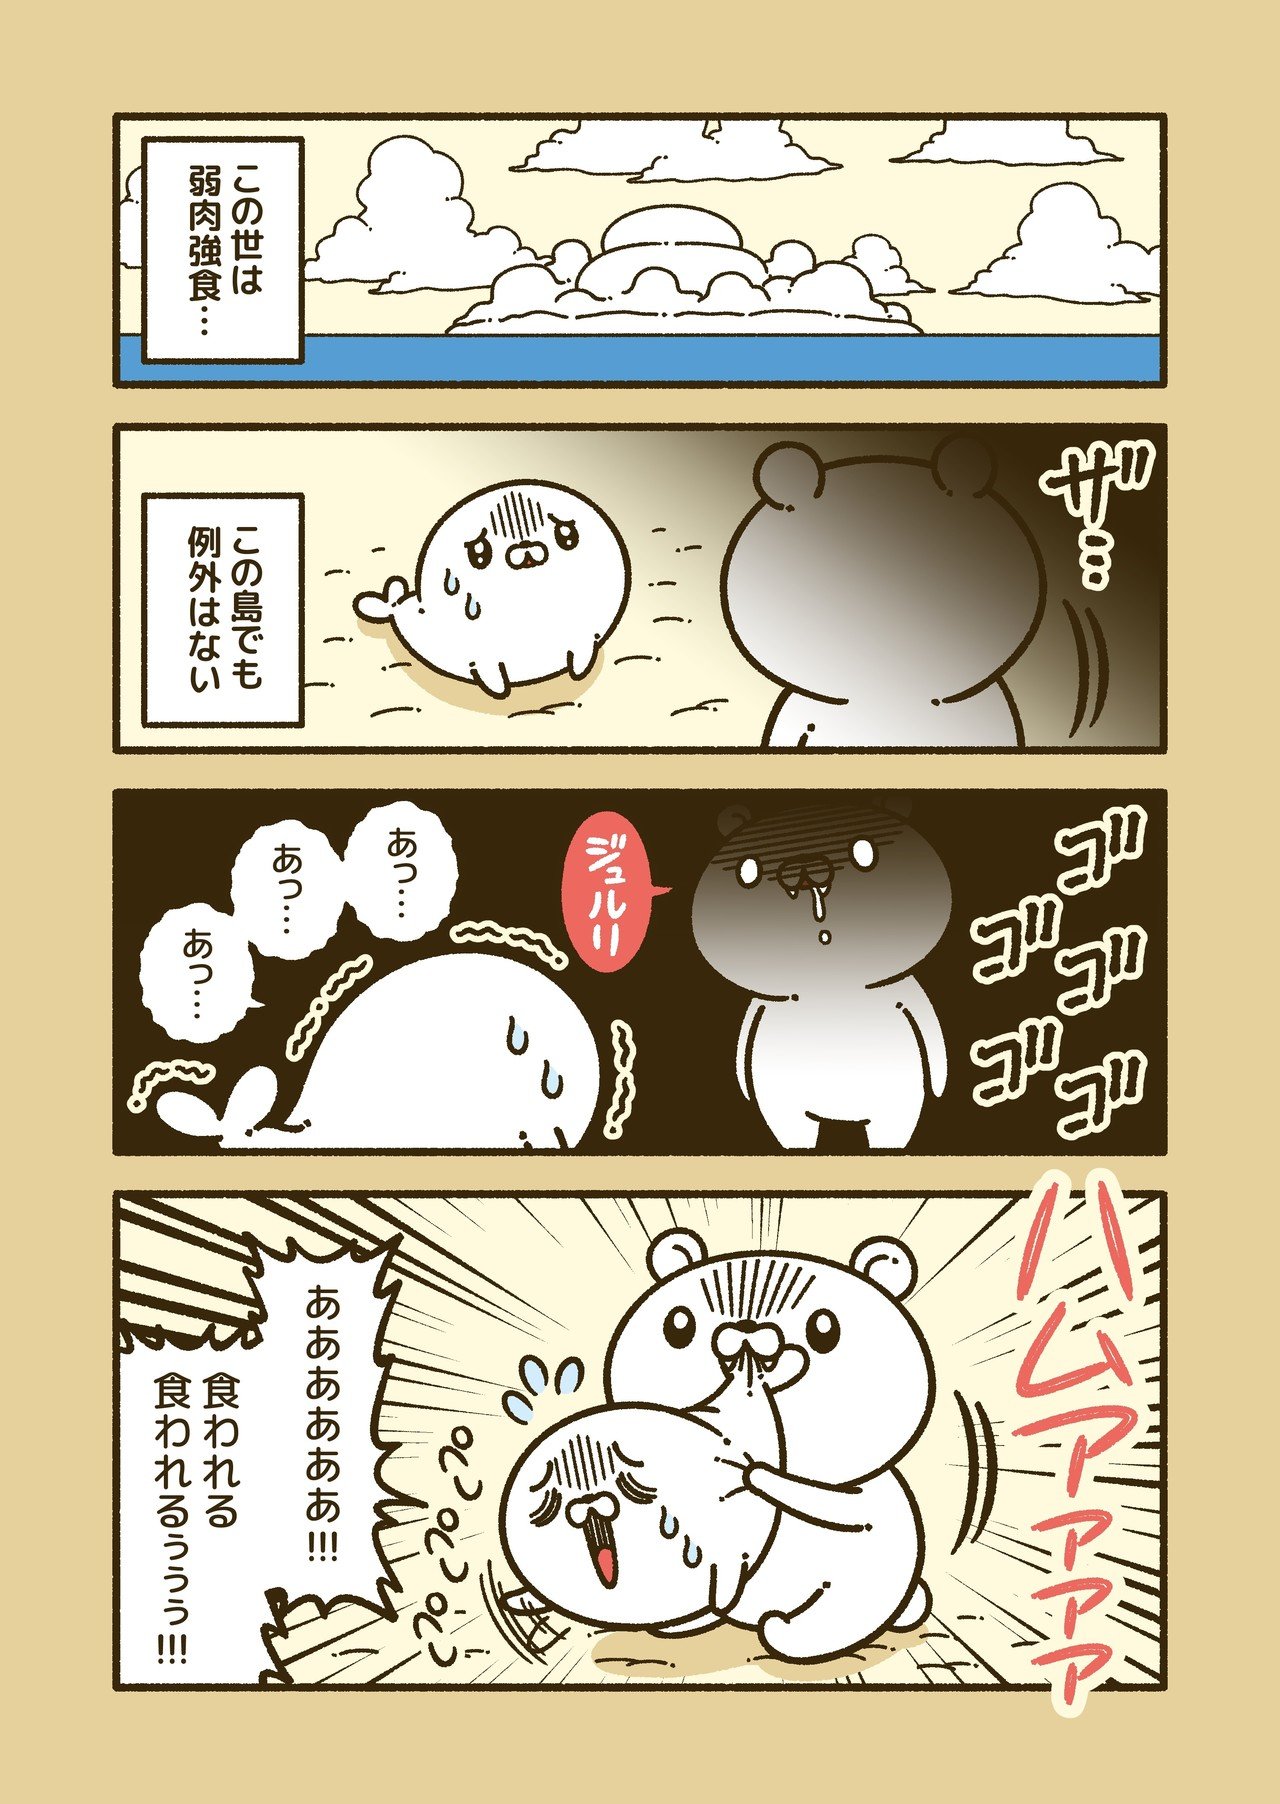 弱肉強食の動物漫画 コハラモトシ Note